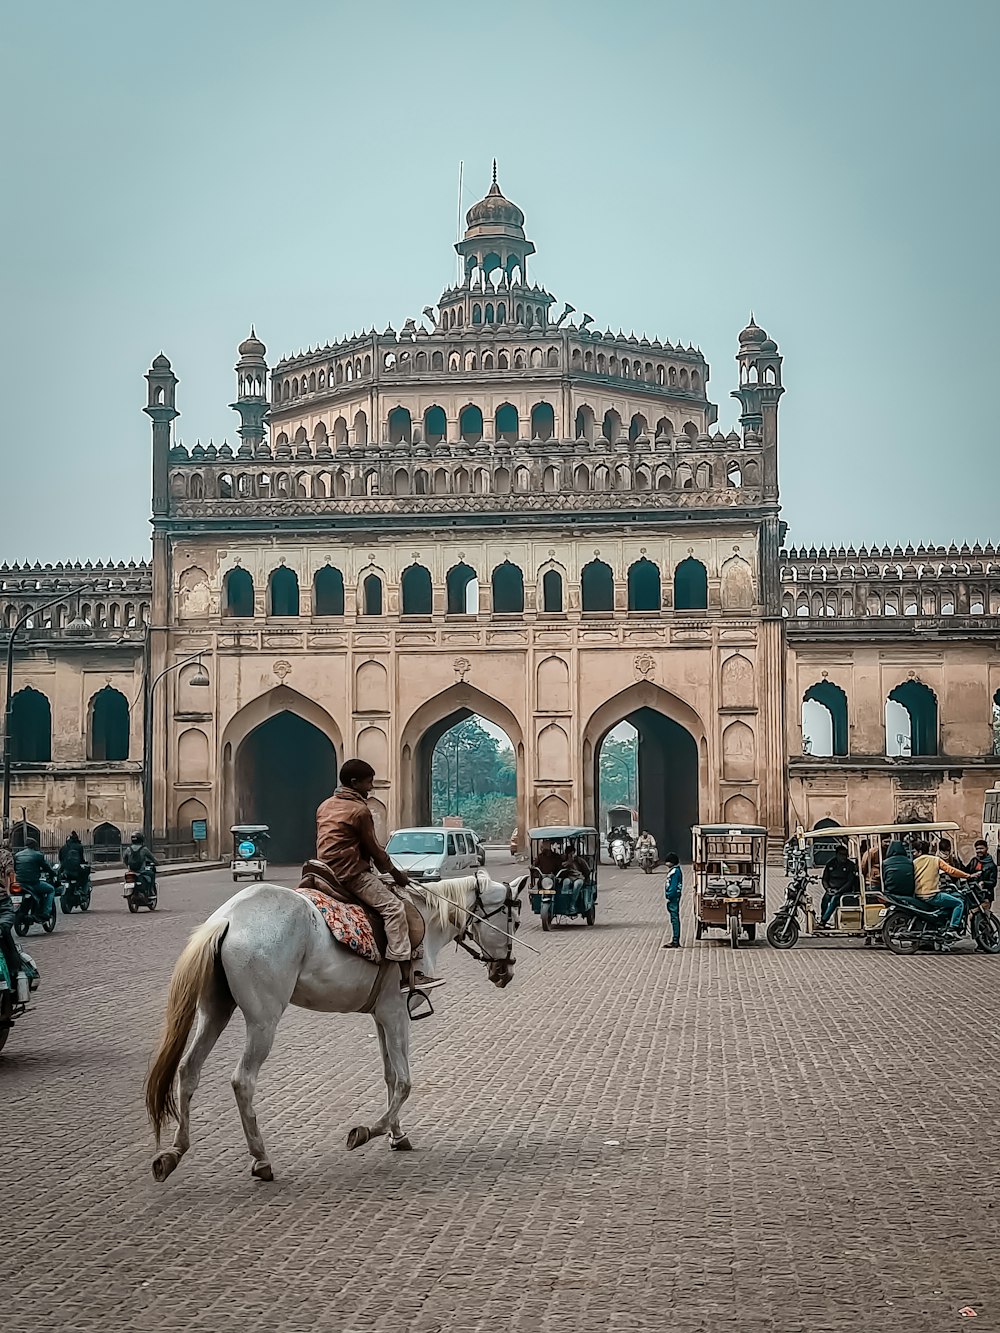 una persona montando a caballo frente a un gran edificio